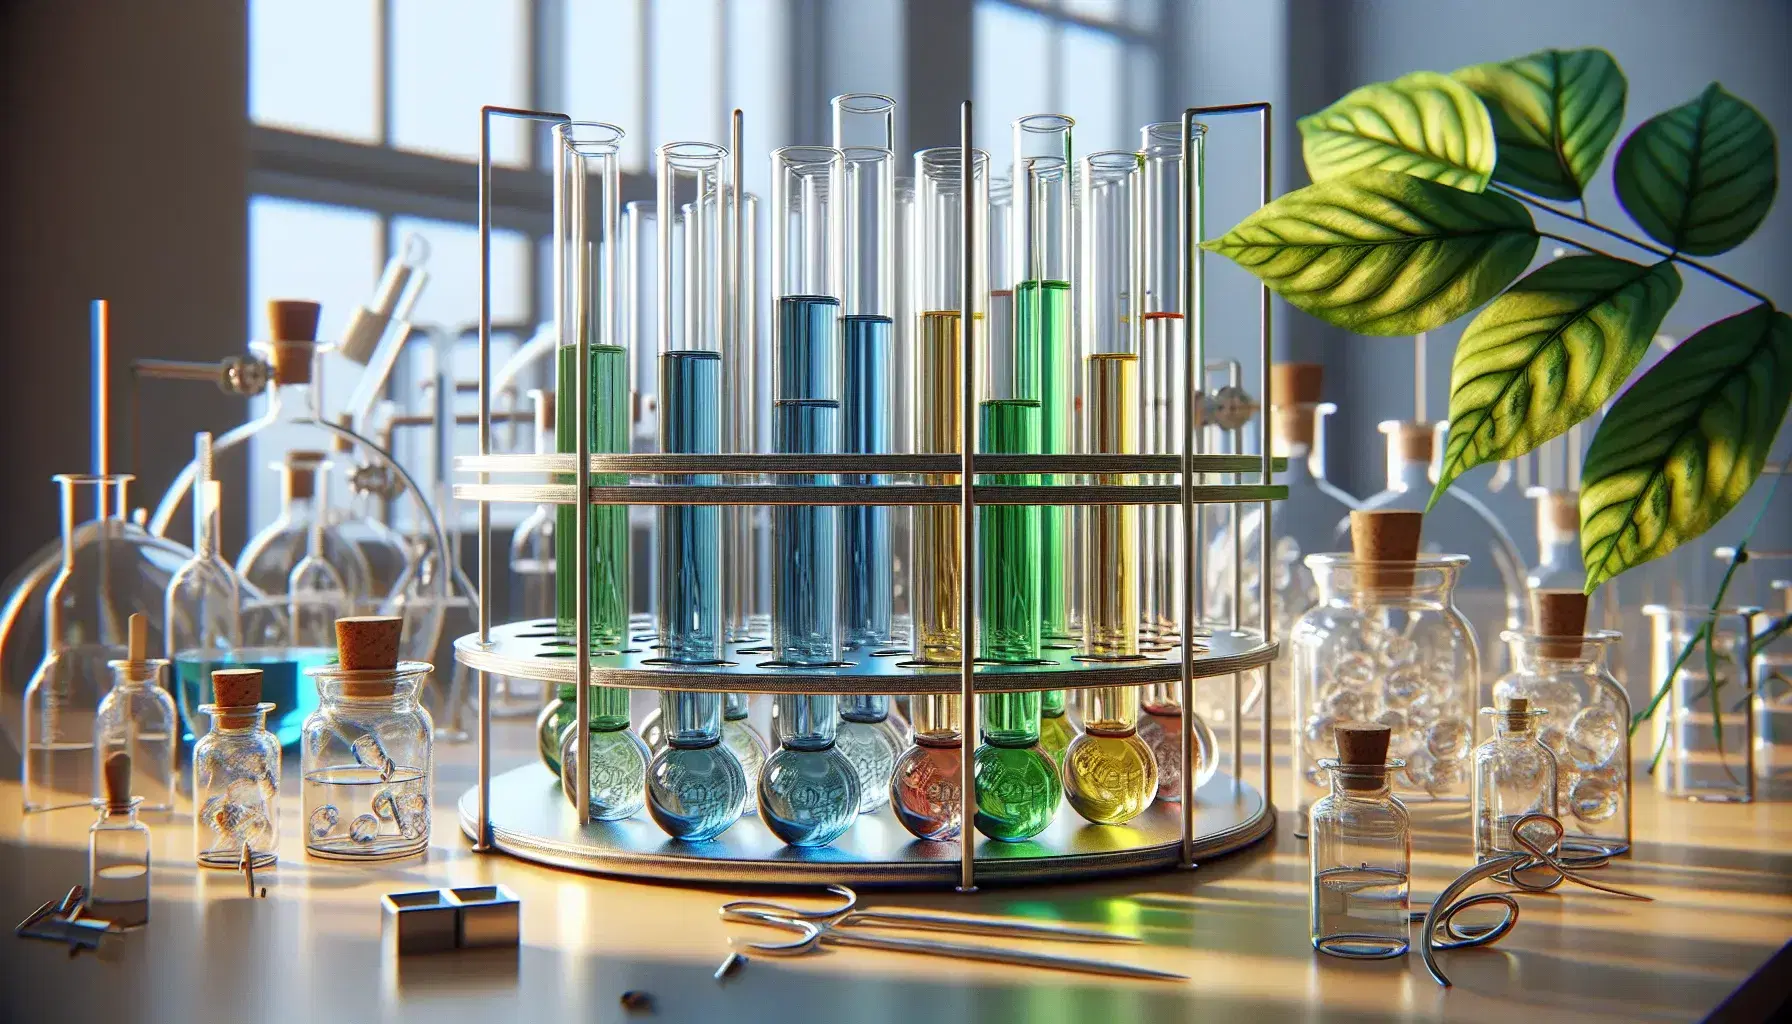 Tubos de ensayo con líquidos de colores azul, verde, amarillo, rojo y transparente en un soporte metálico, con frascos y hoja verde en laboratorio.